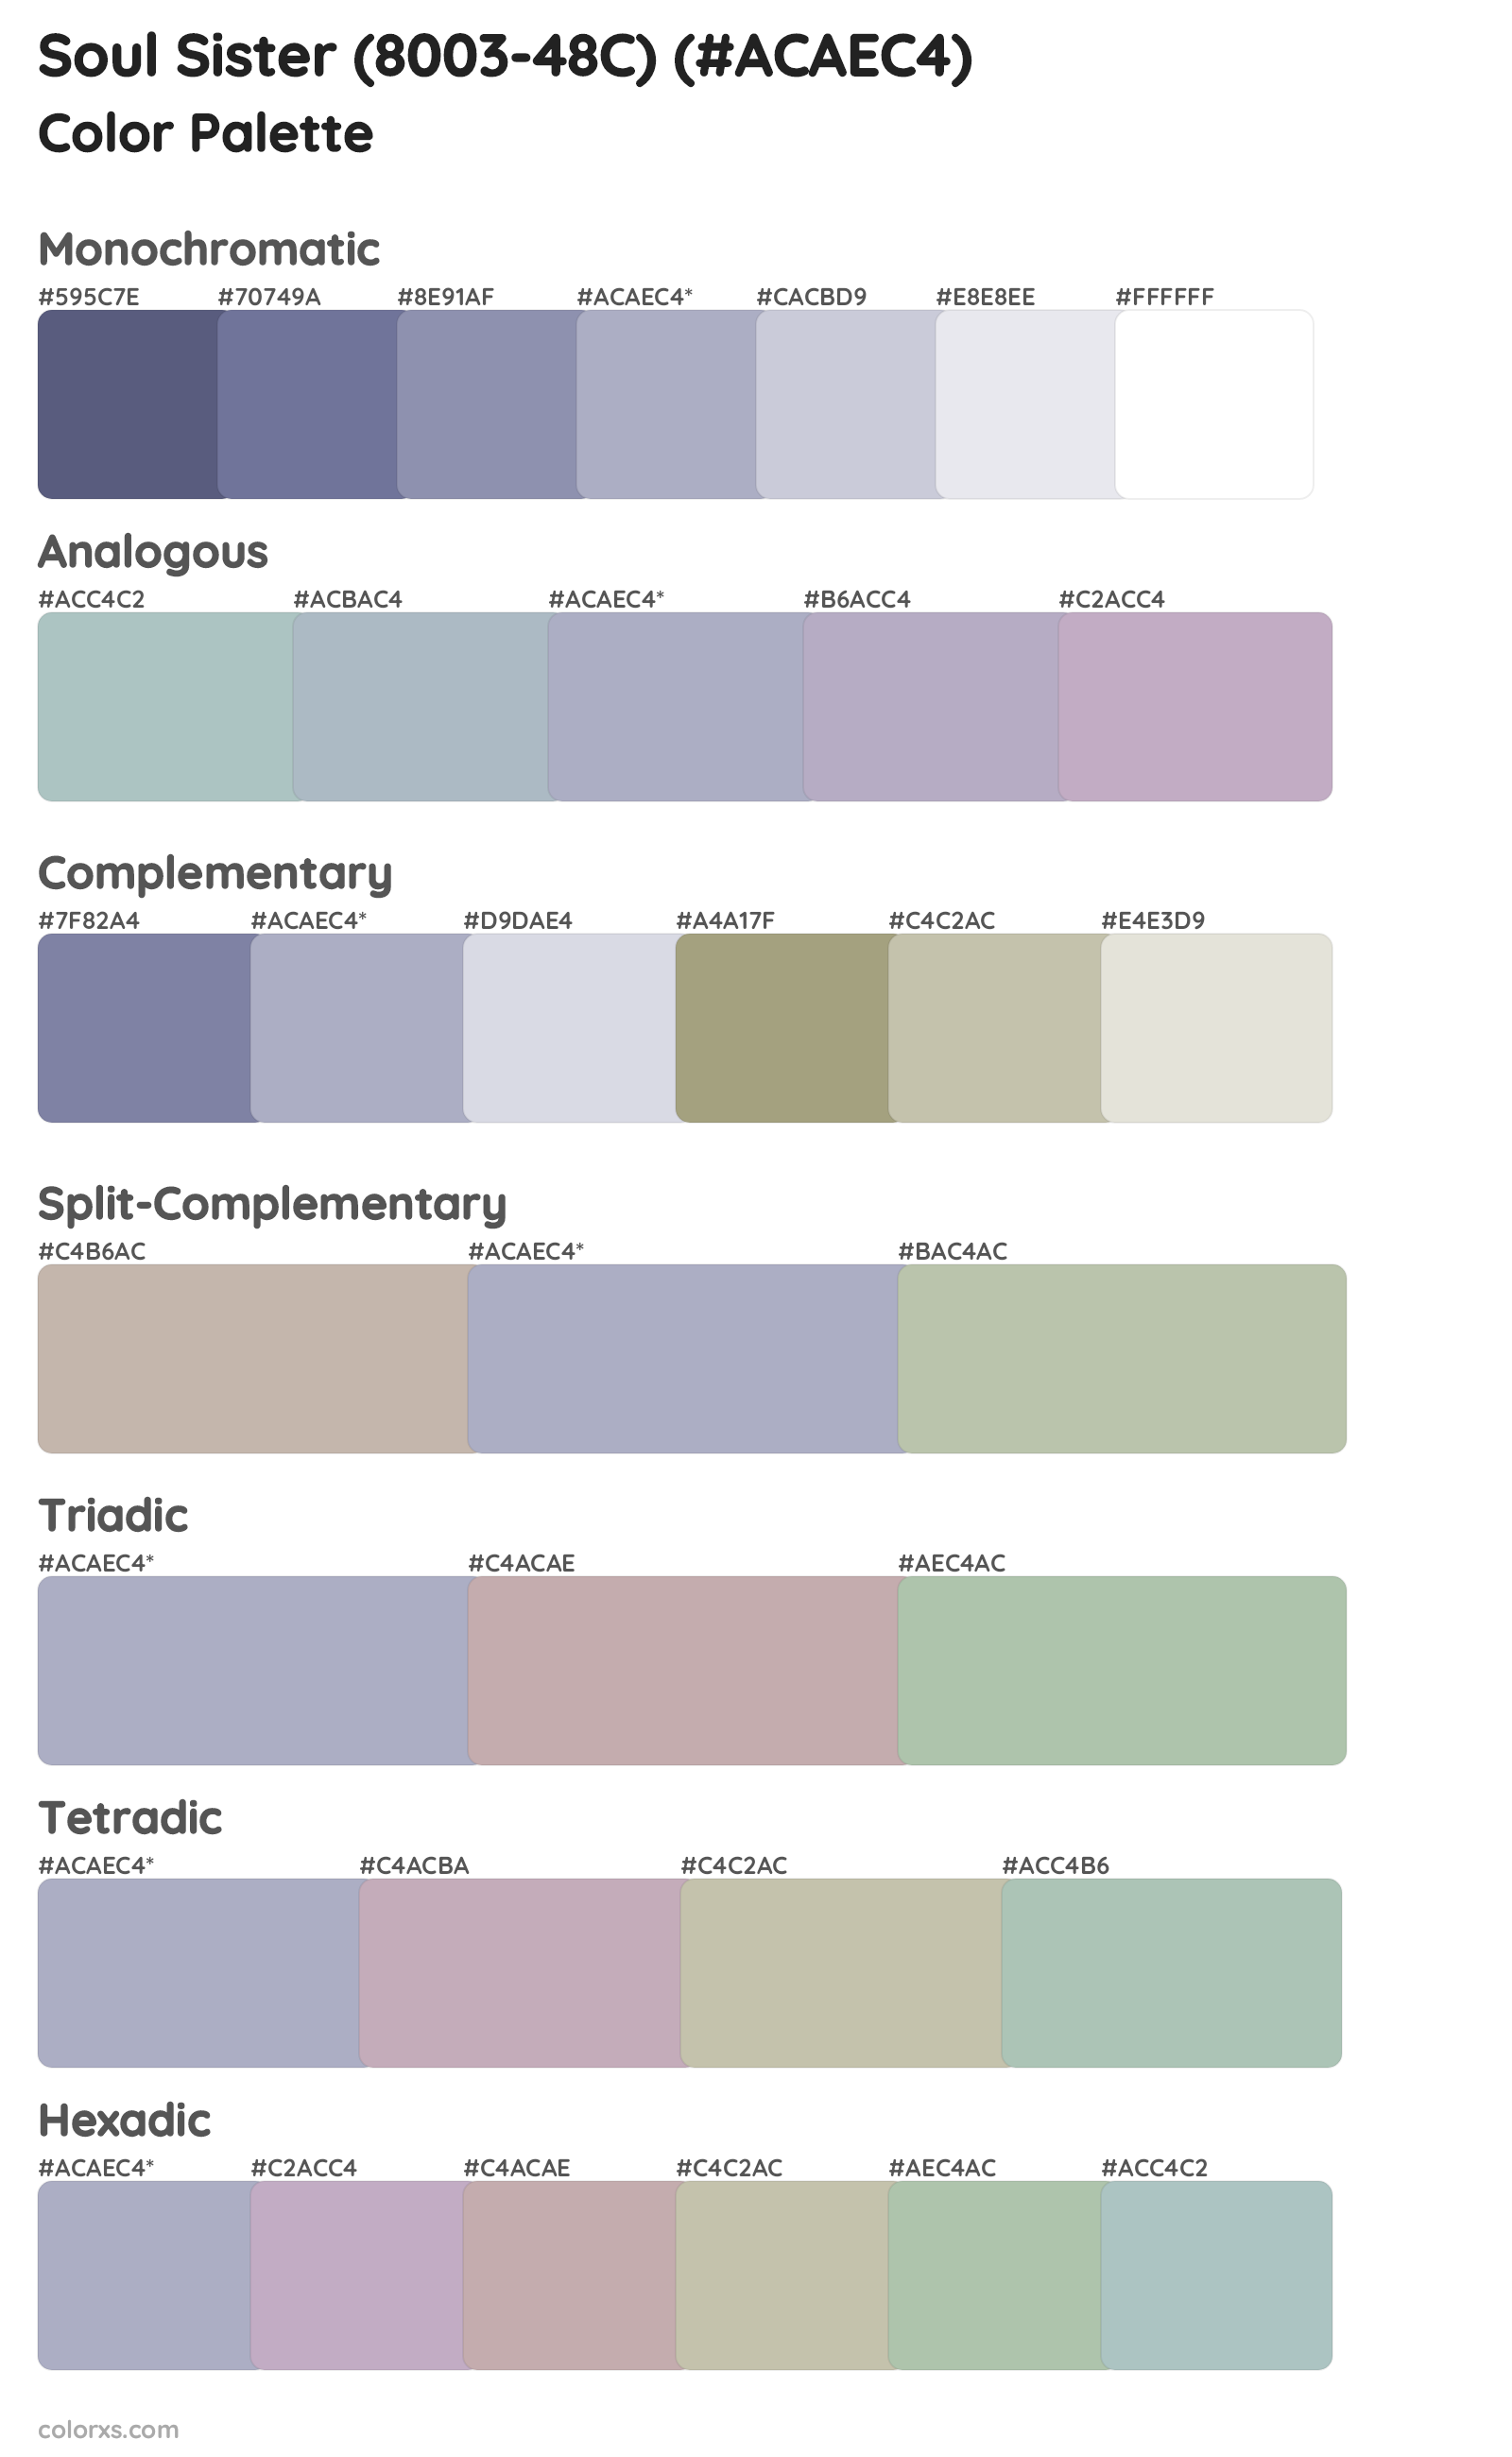 Soul Sister (8003-48C) Color Scheme Palettes